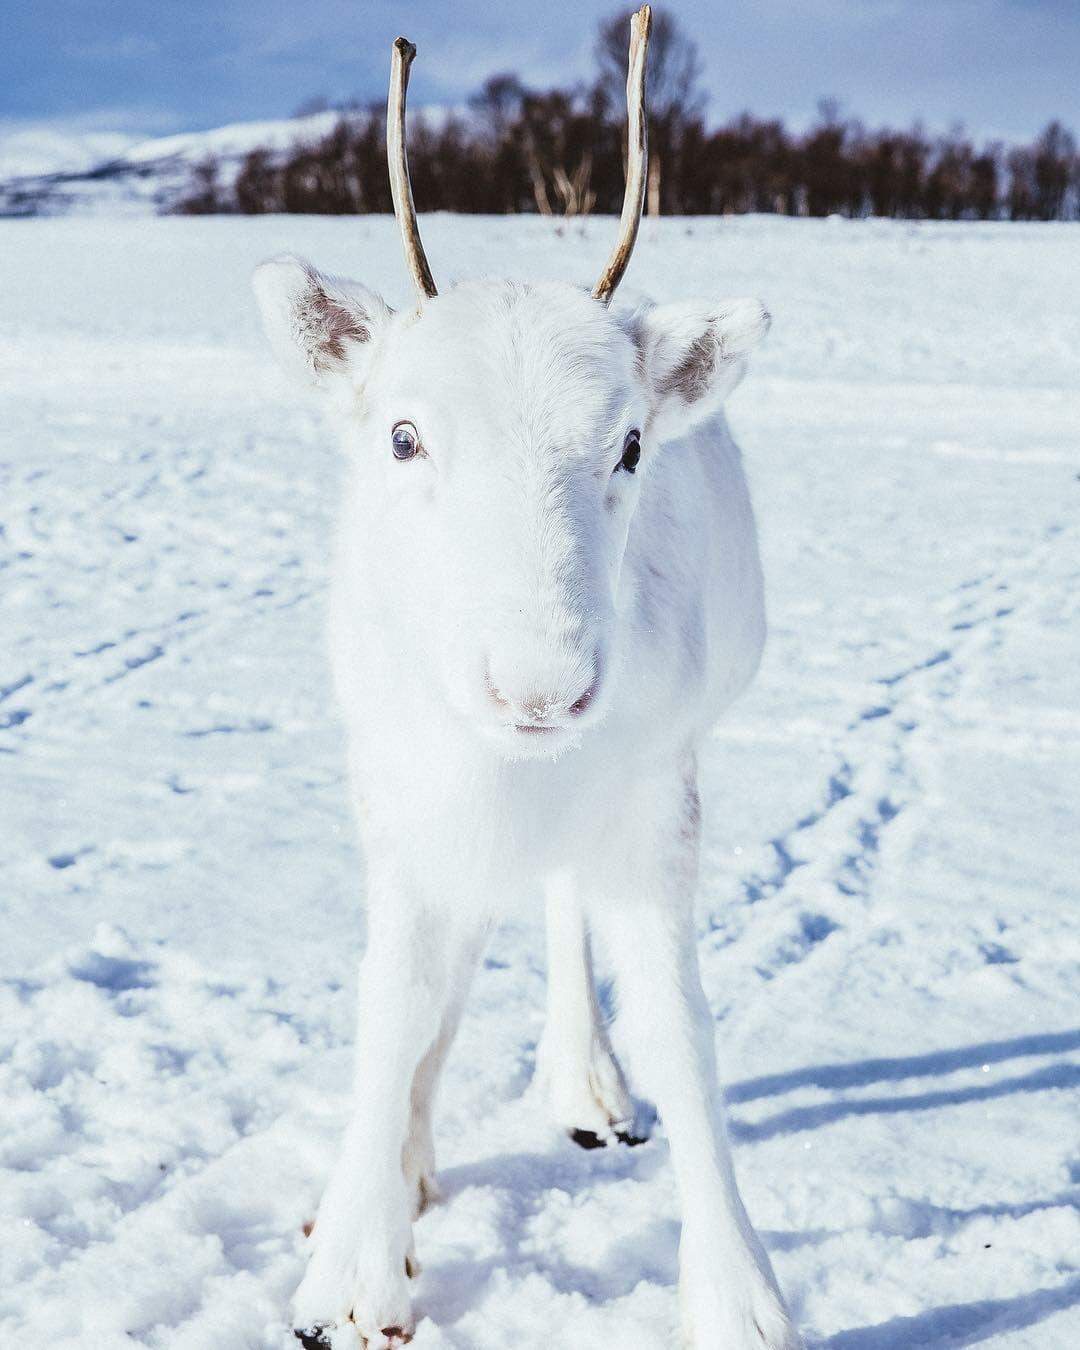 Filhote raro de rena branca é fotografado 'camuflado' na neve na Noruega.